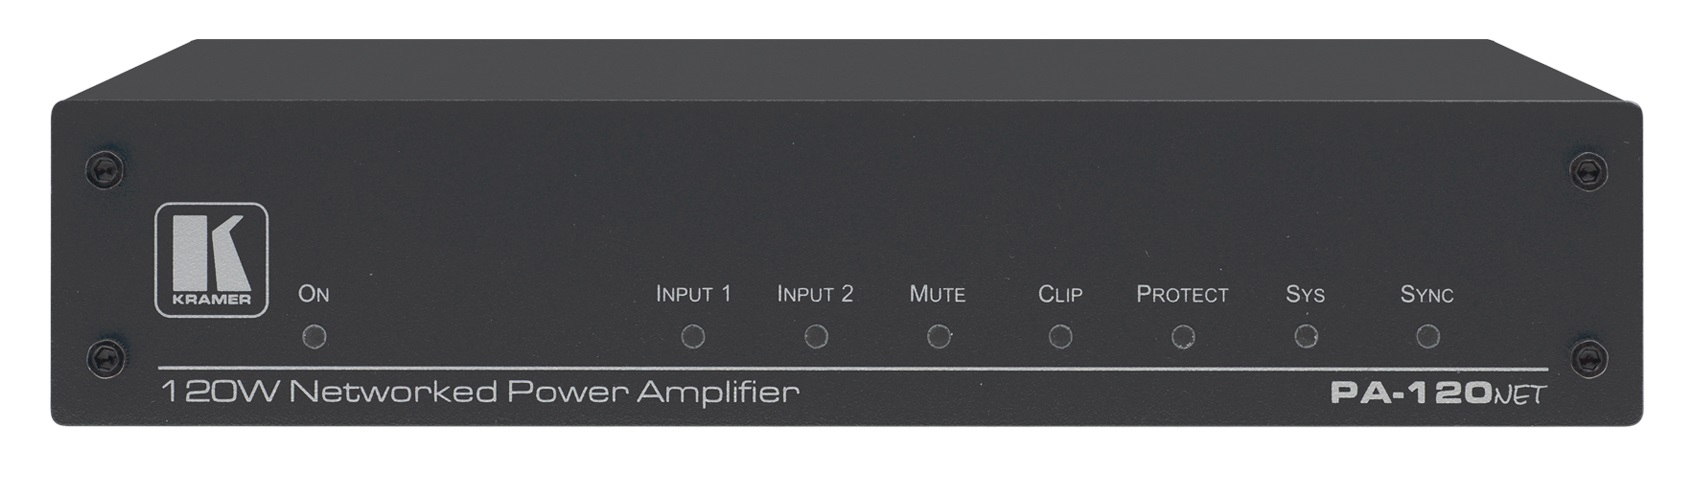 Kramer Electronics PA-120NET ljudförstärkare 2.0 kanaler Svart